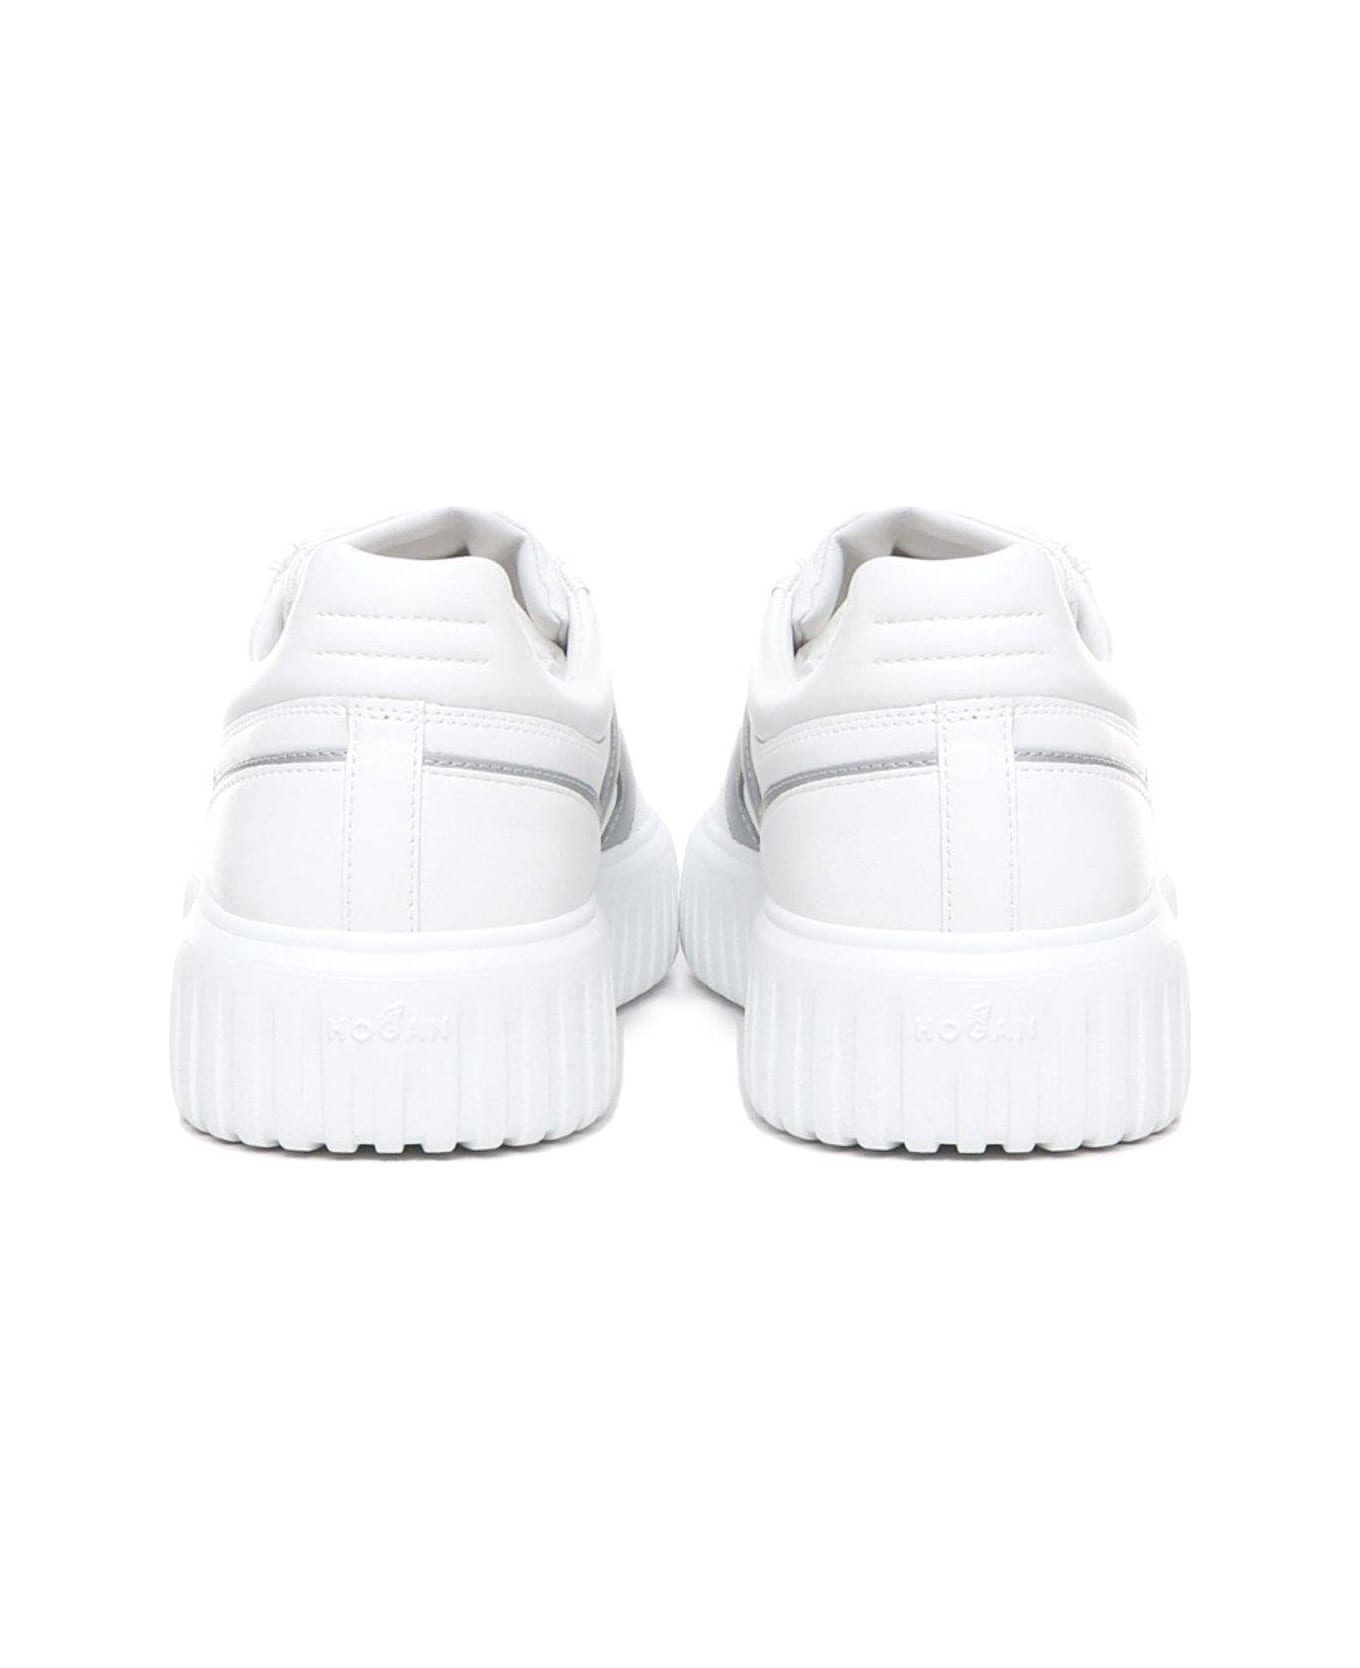 Hogan H-stripes Round Toe Sneakers - White